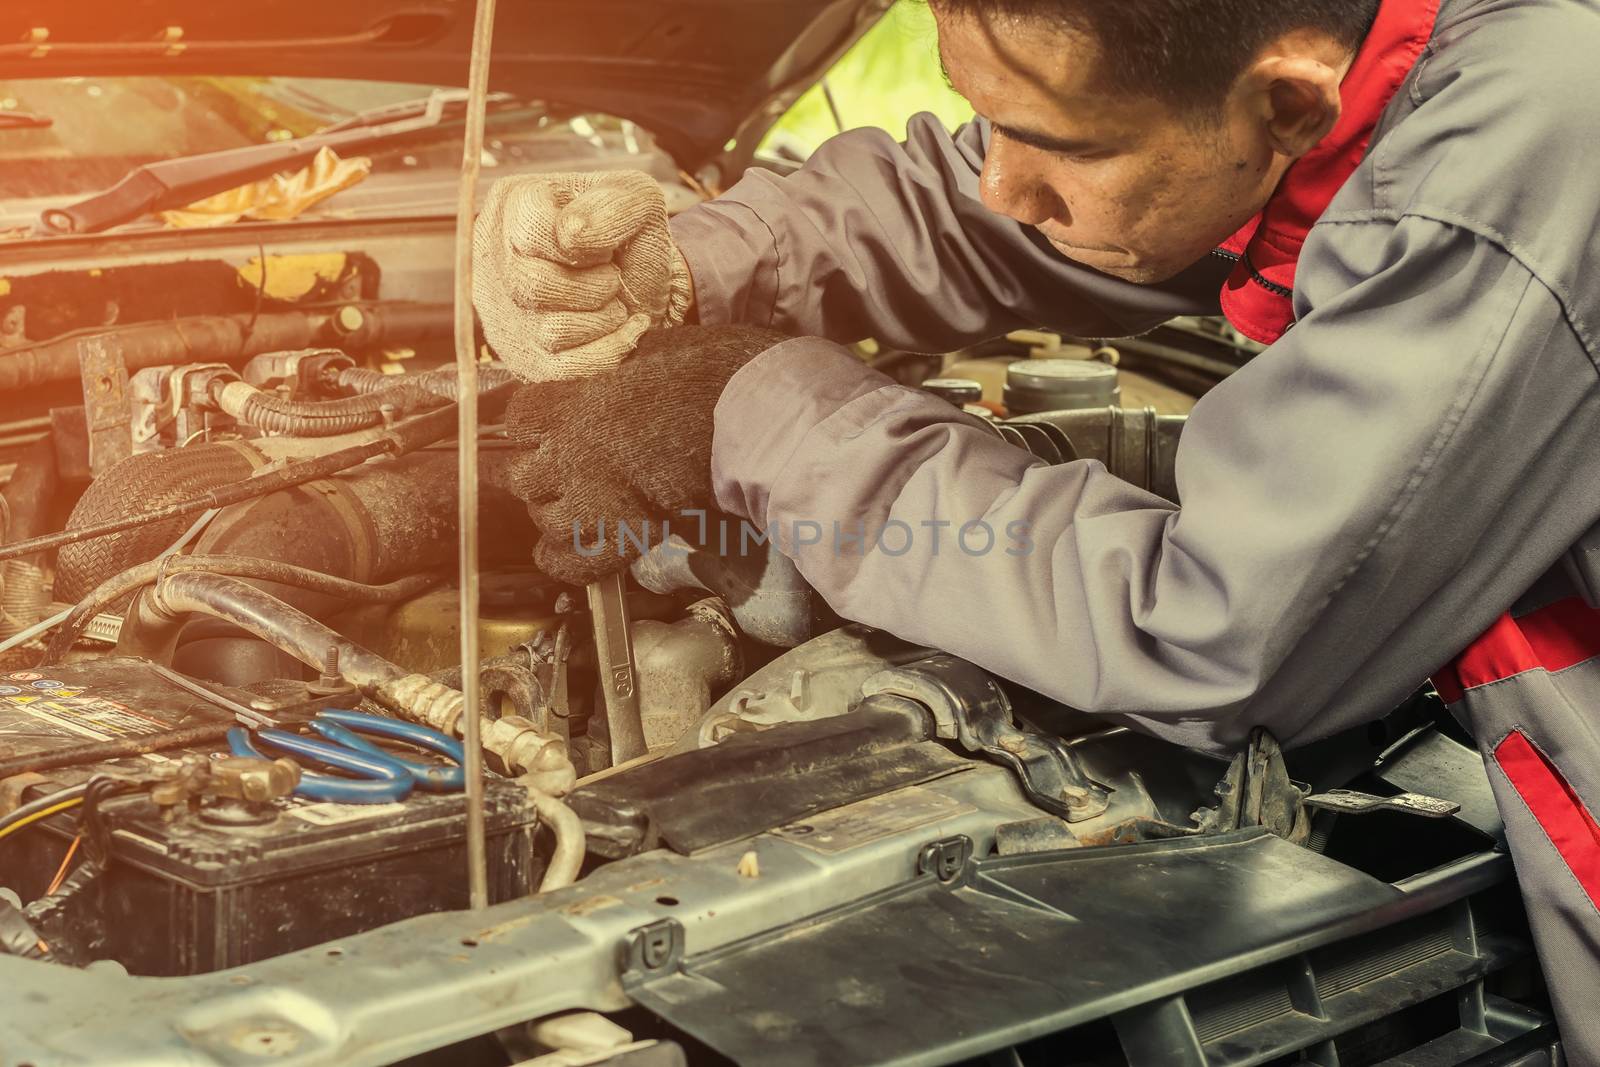 Car repair service by wattanaphob